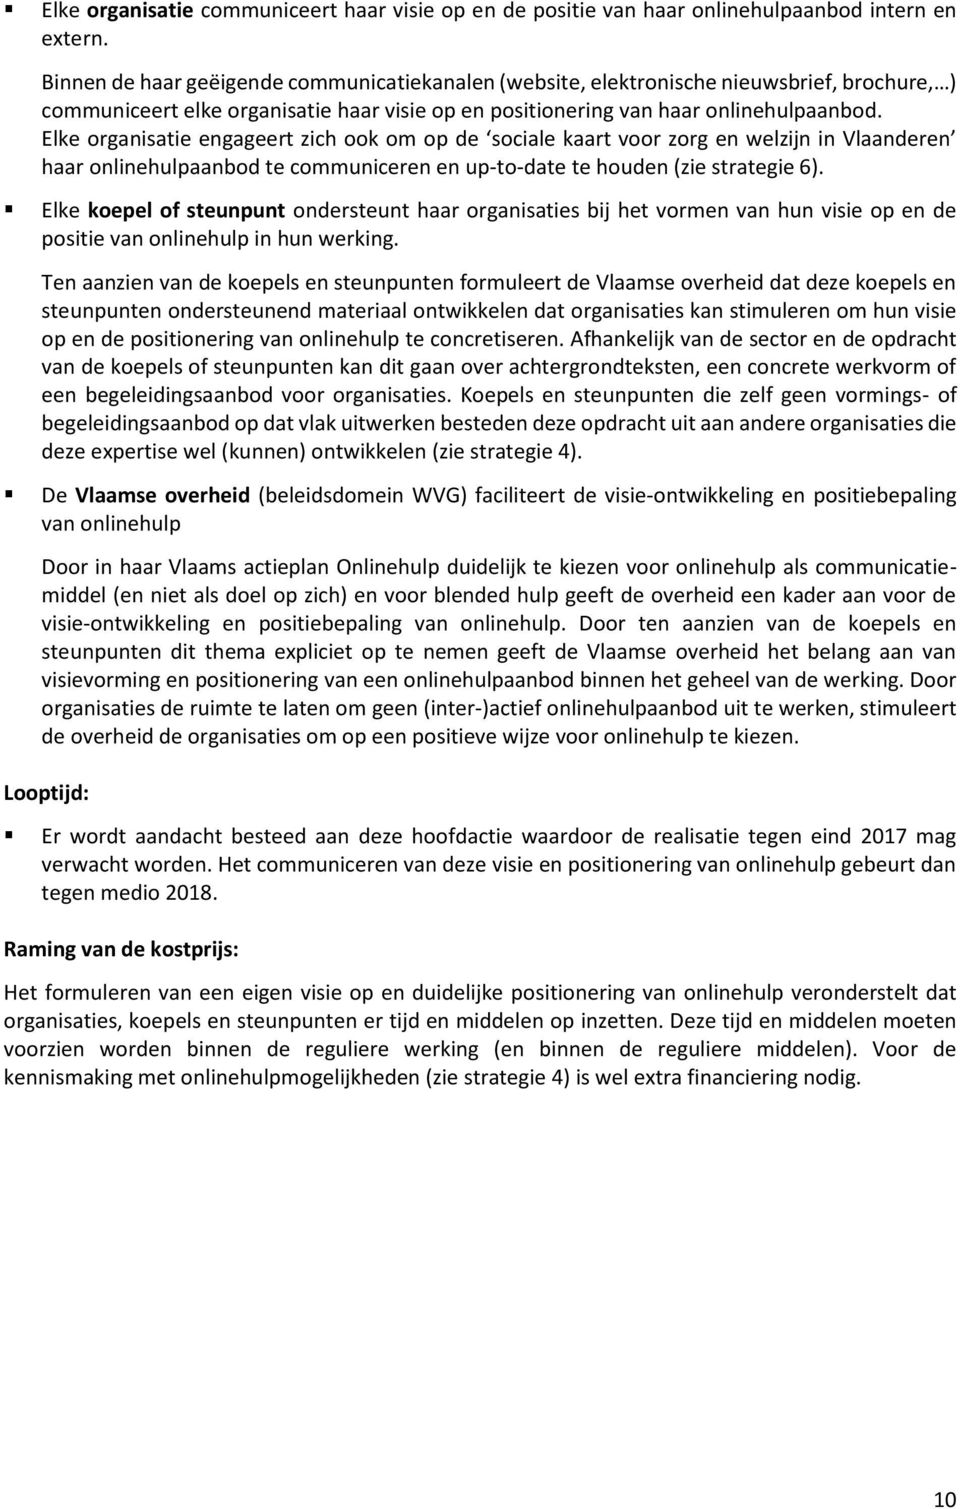 Elke organisatie engageert zich ook om op de sociale kaart voor zorg en welzijn in Vlaanderen haar onlinehulpaanbod te communiceren en up-to-date te houden (zie strategie 6).